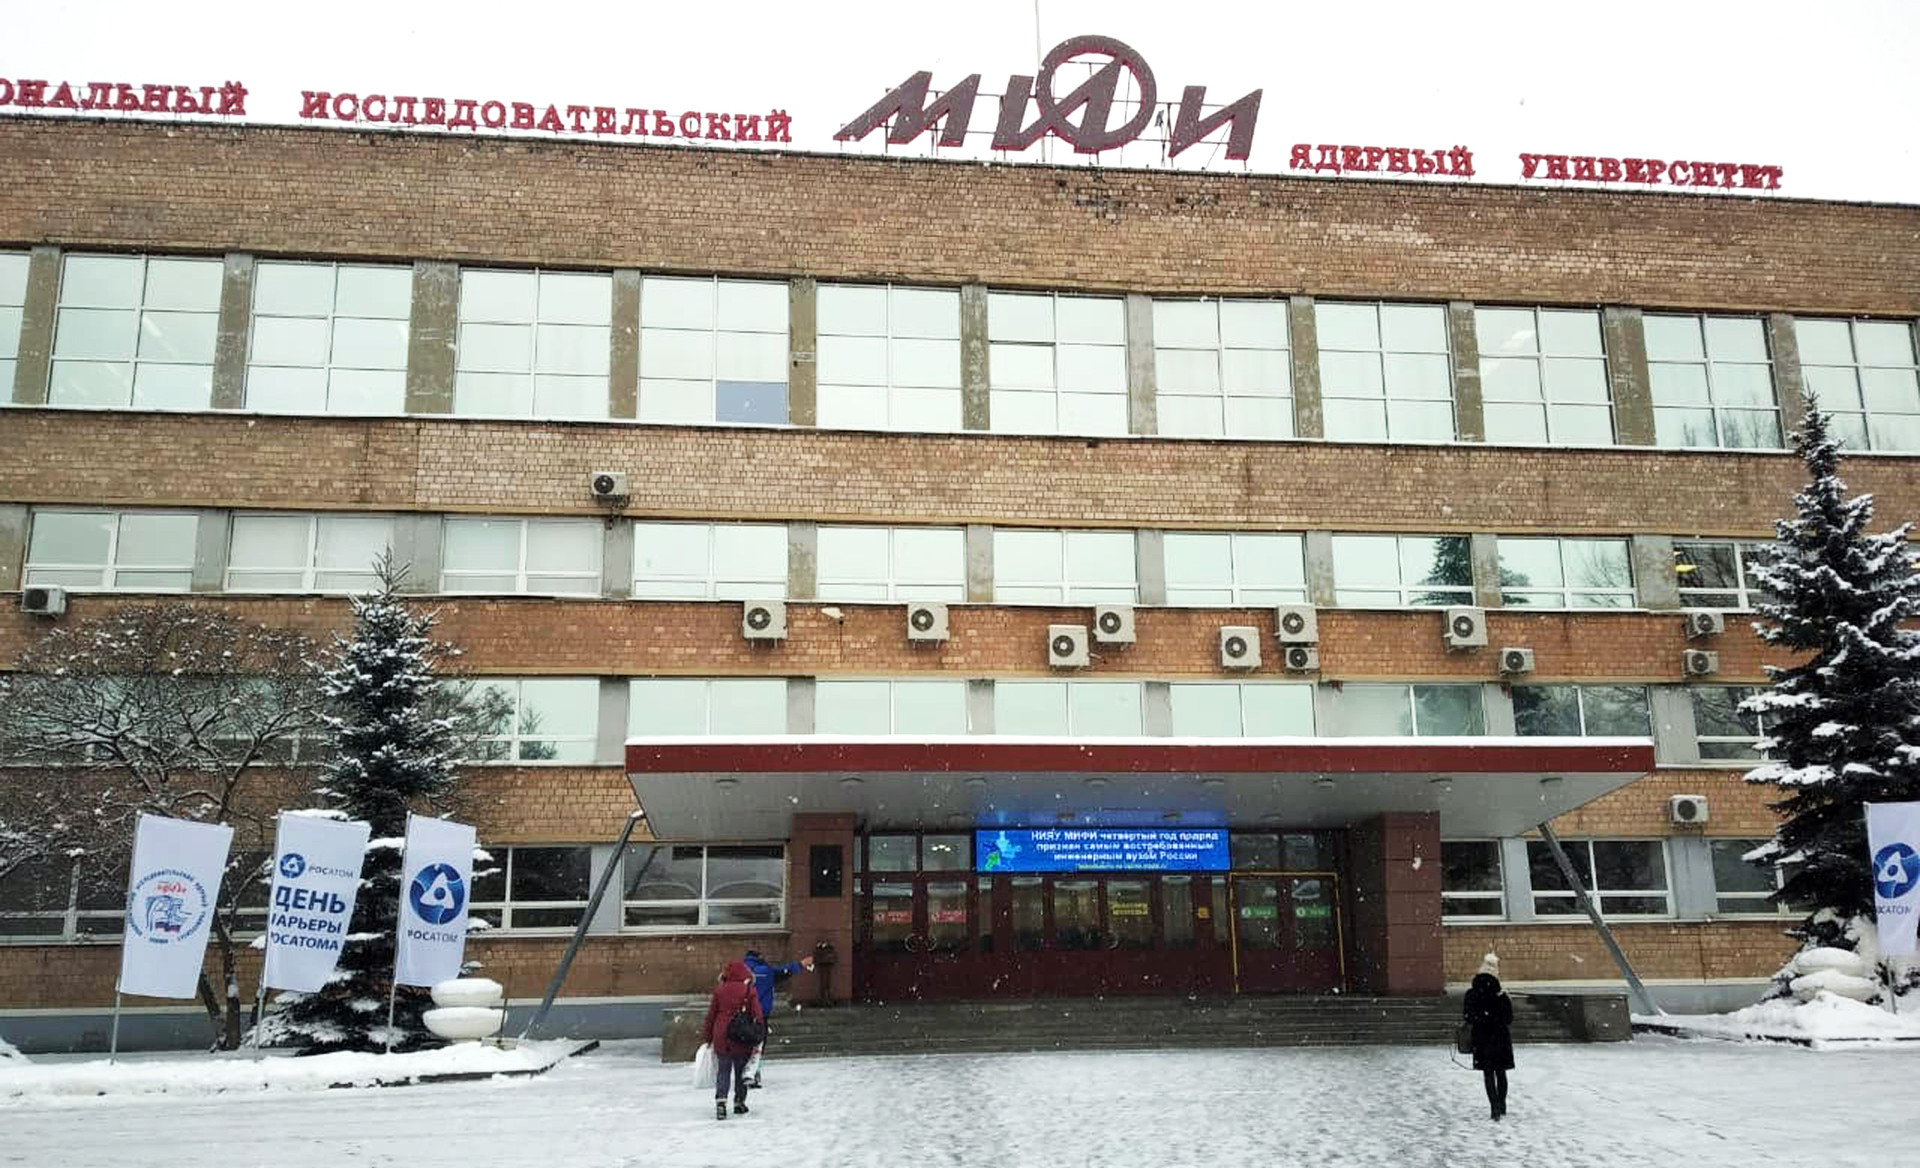 Kampus Universitas Riset Nuklir Nasional MIFI (Institut Teknik Fisika Moskow).